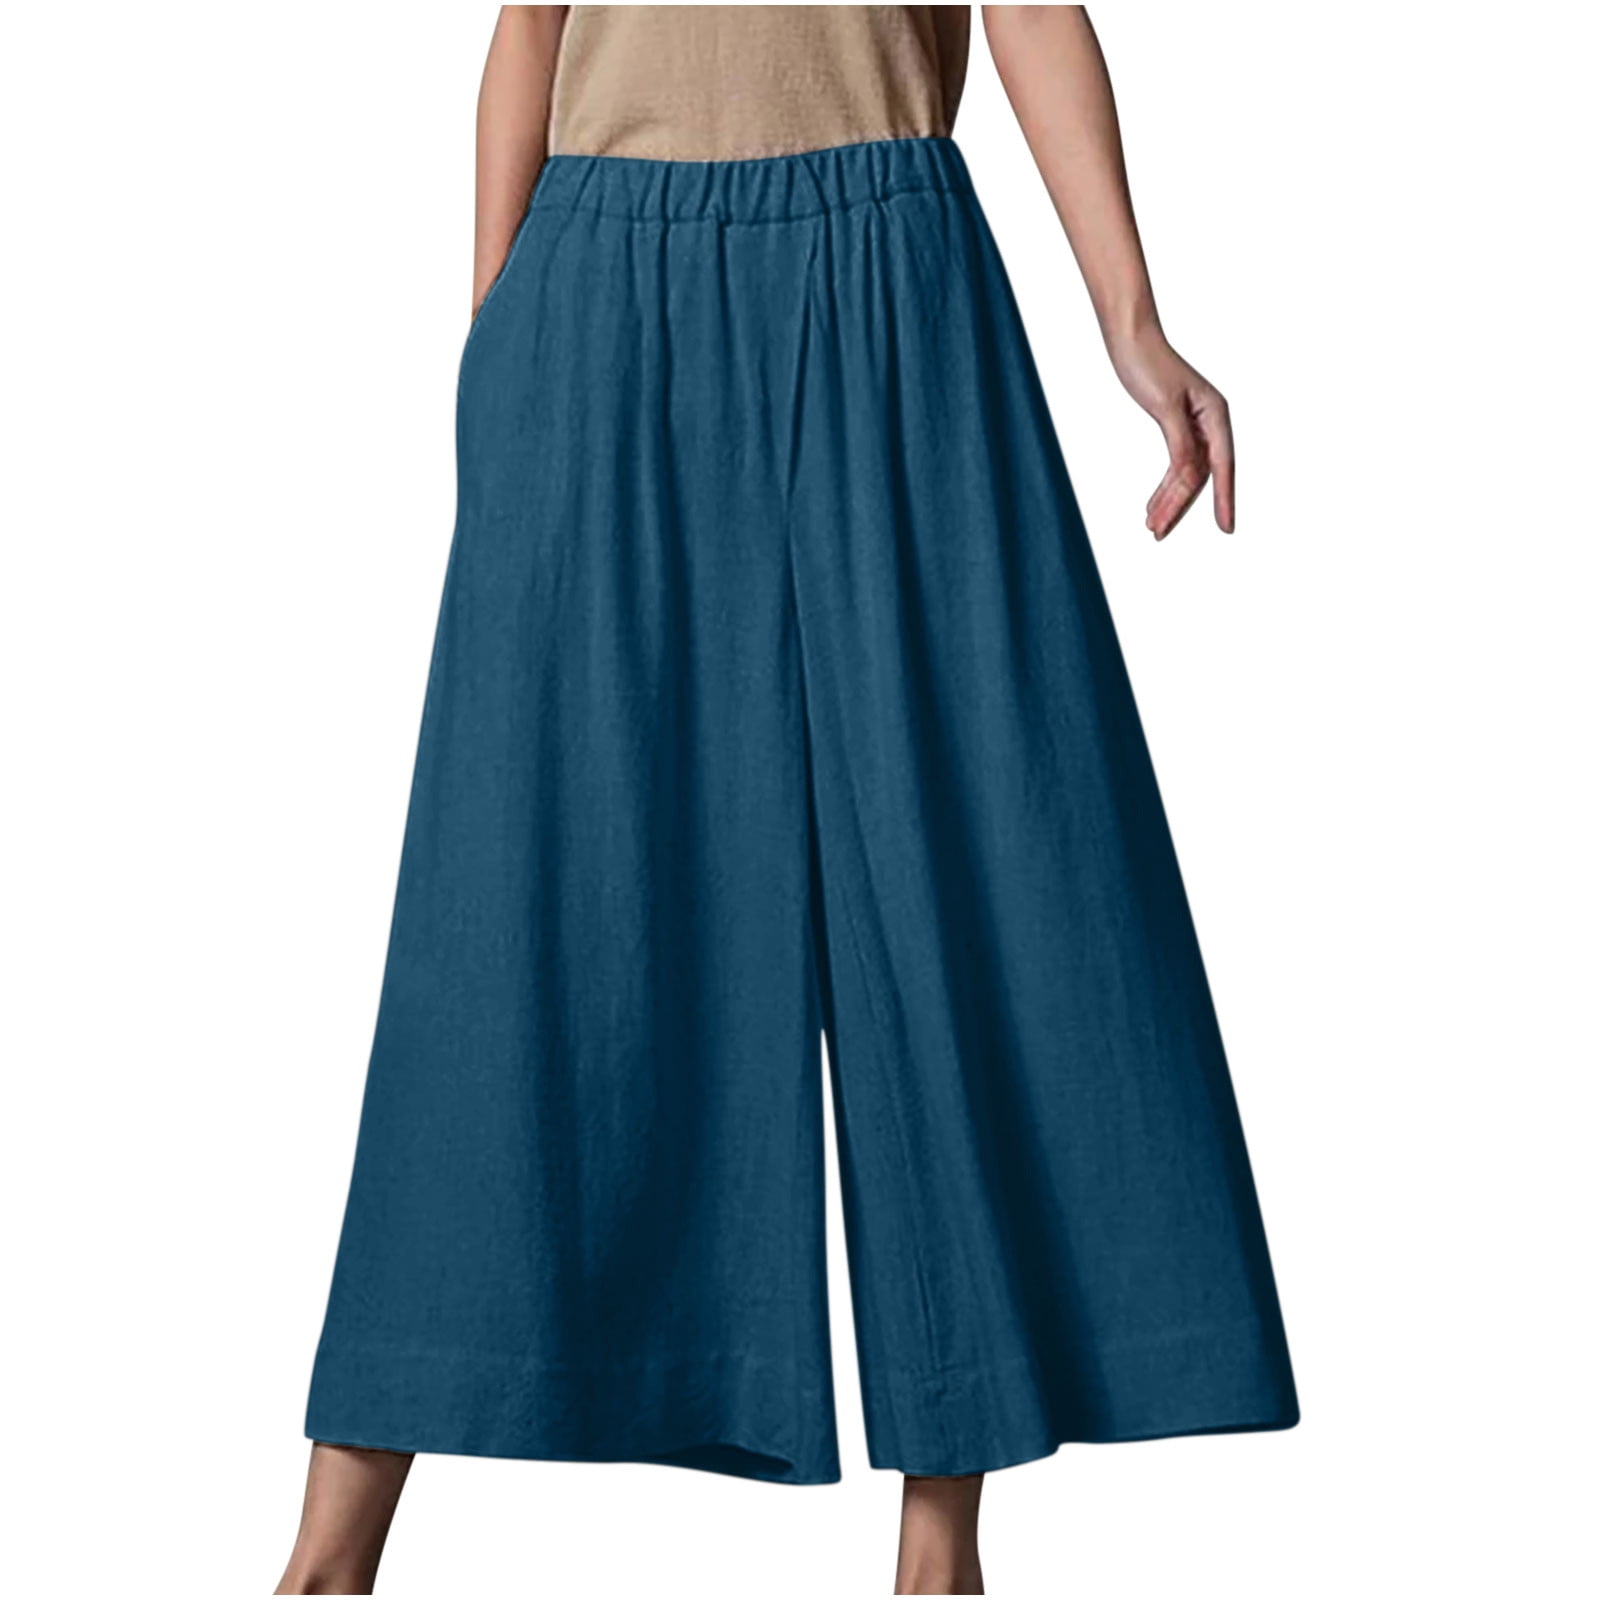 CZHJS Women's Solid Color Cotton Linen Pants Clearance Fashion Elastic ...